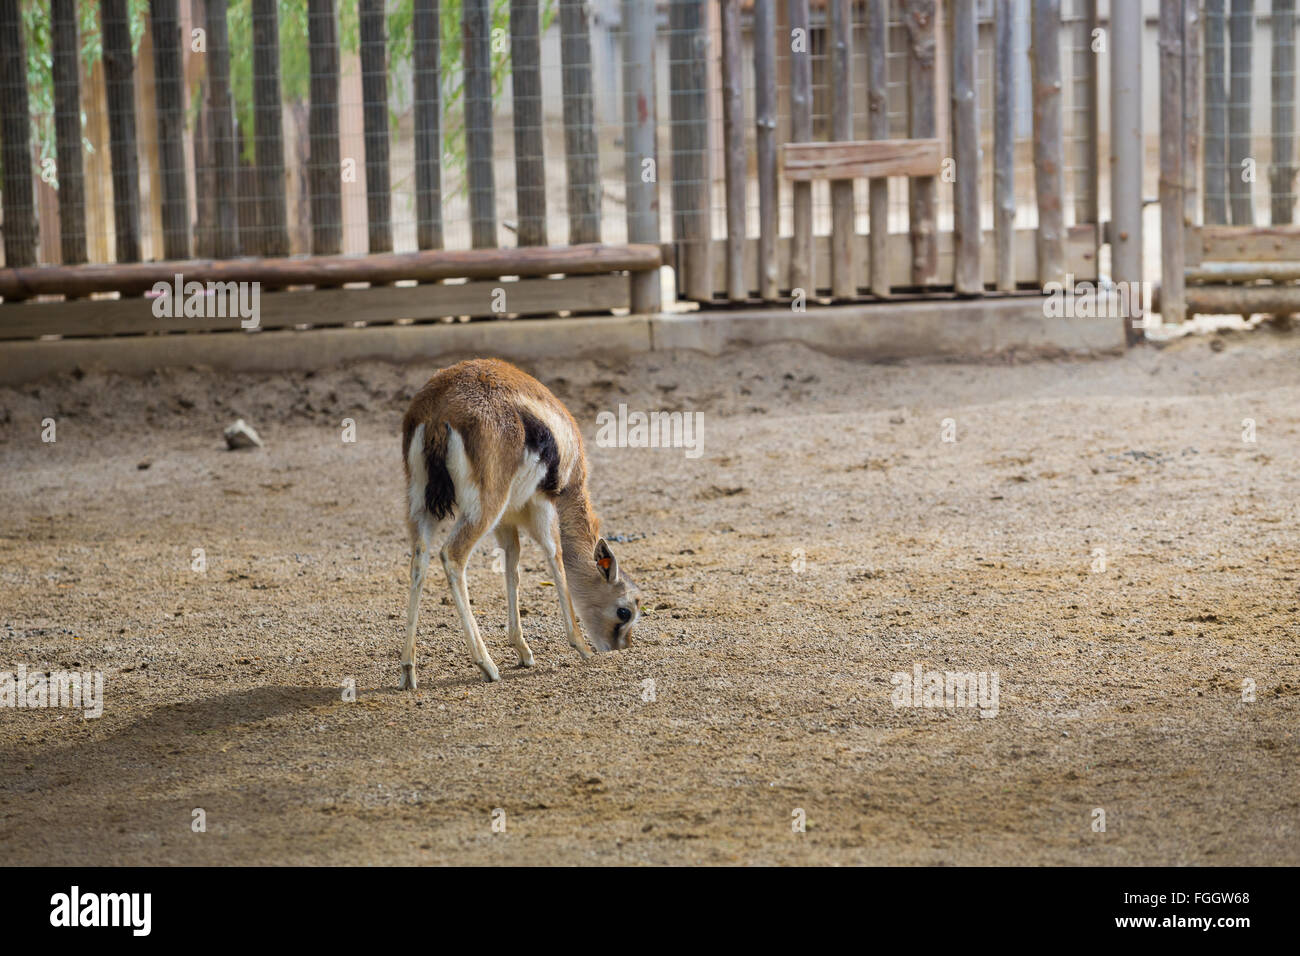 Cervo o qualche tipo di animale gazzelle con la testa nella terra in cerca di cibo. Foto Stock